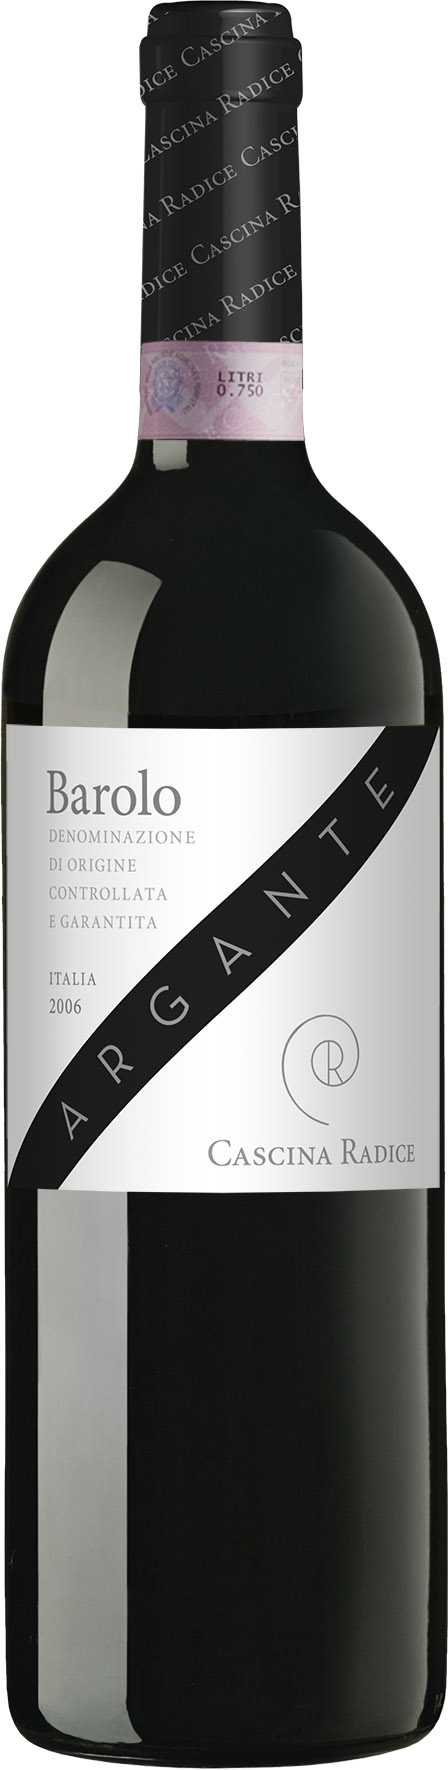 Argante 2010 Barolo